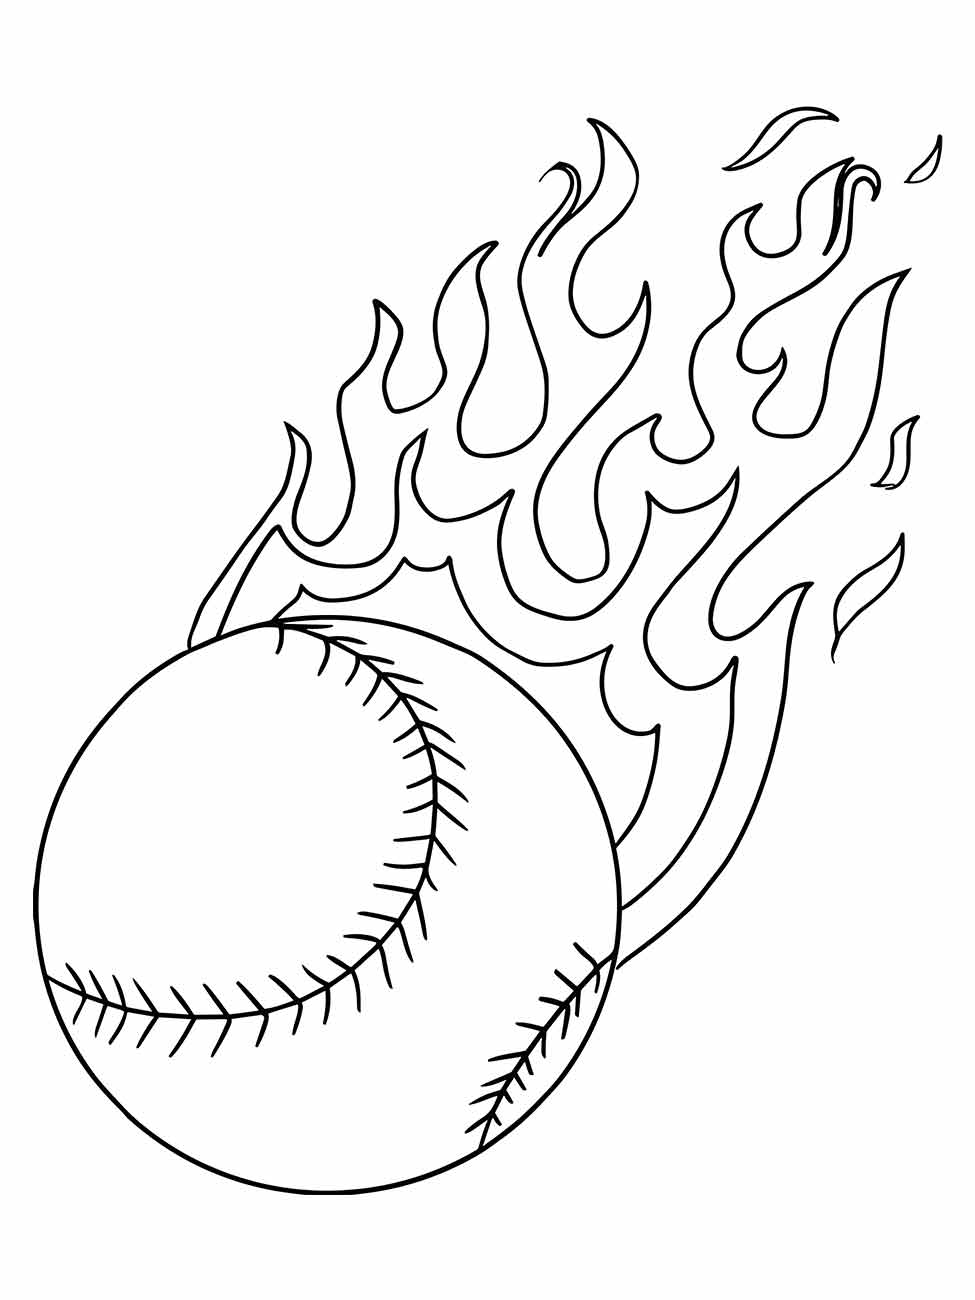 Página de colorir realista para adultos de um jogo de beisebol nos